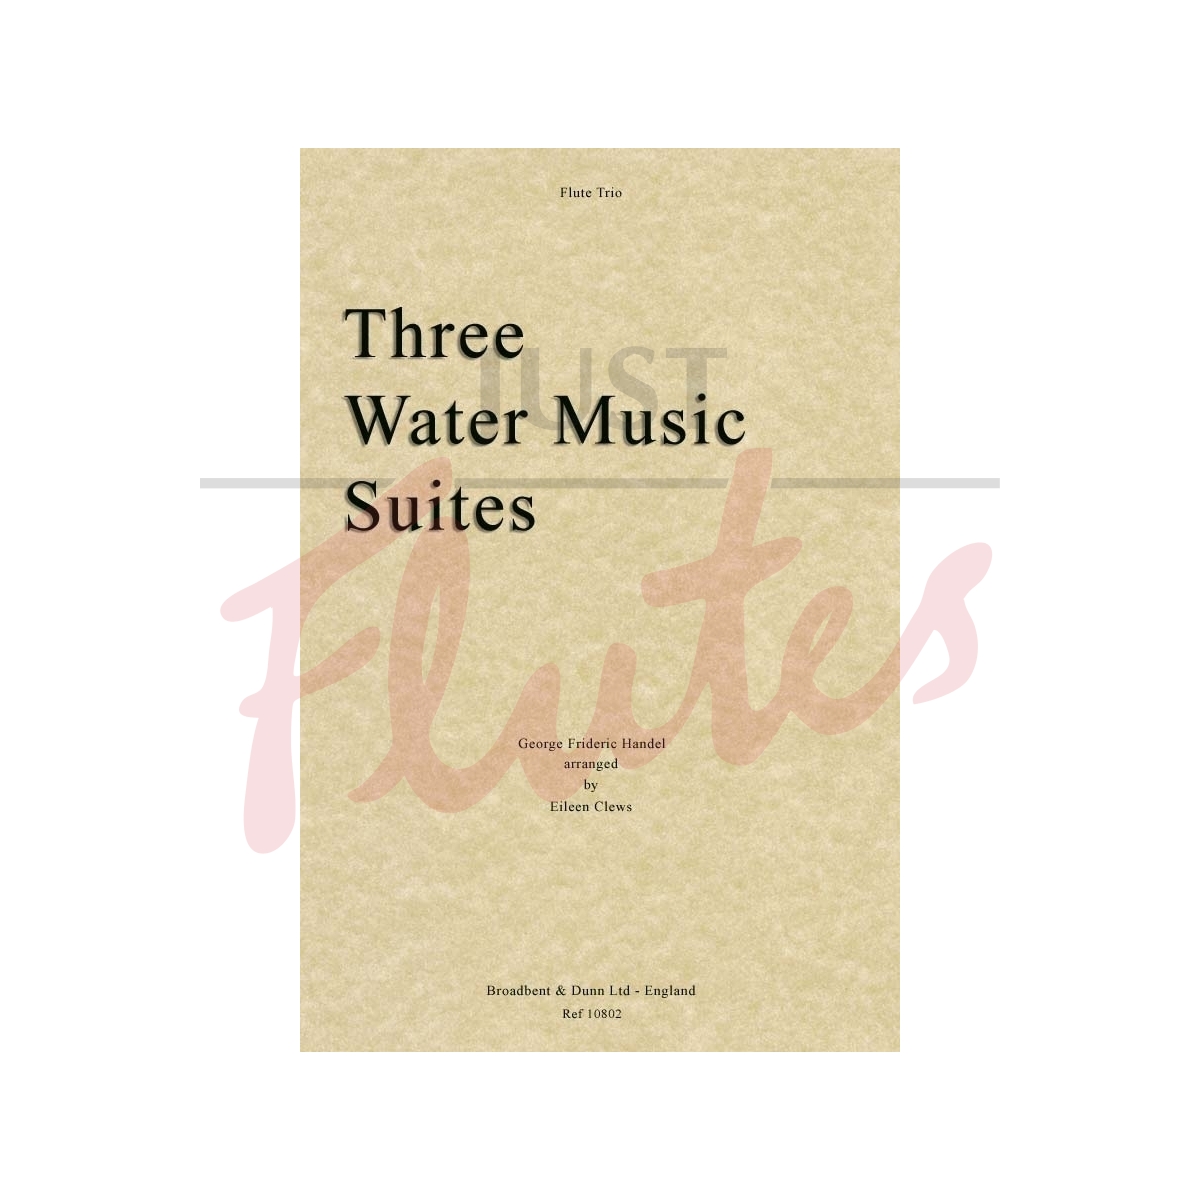 Three Water Music Suites [Flute Trio]